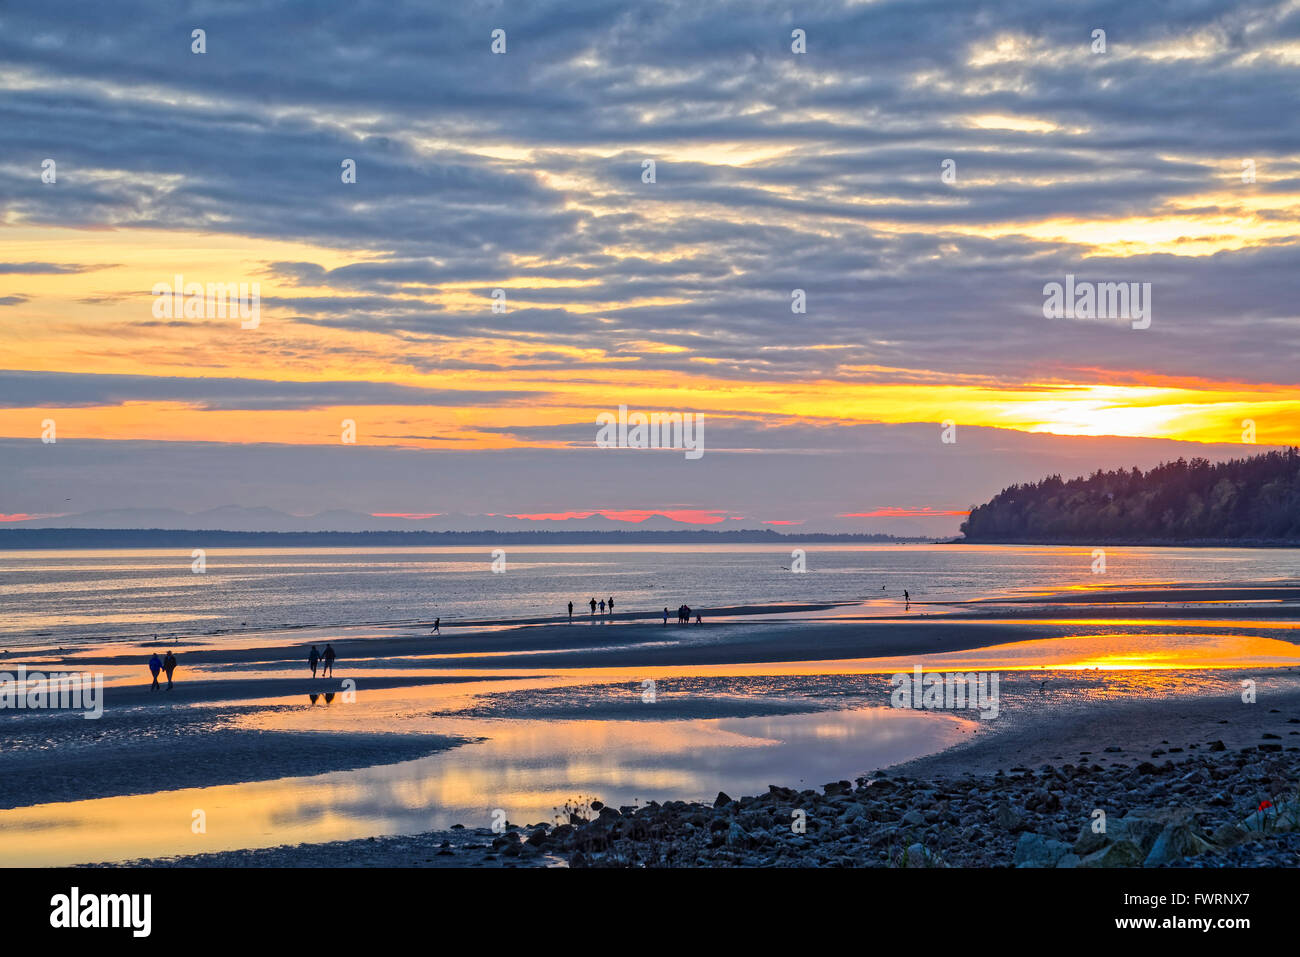 Sunset, Semiahmoo Bay, White Rock, British Columbia, Canada Stock Photo